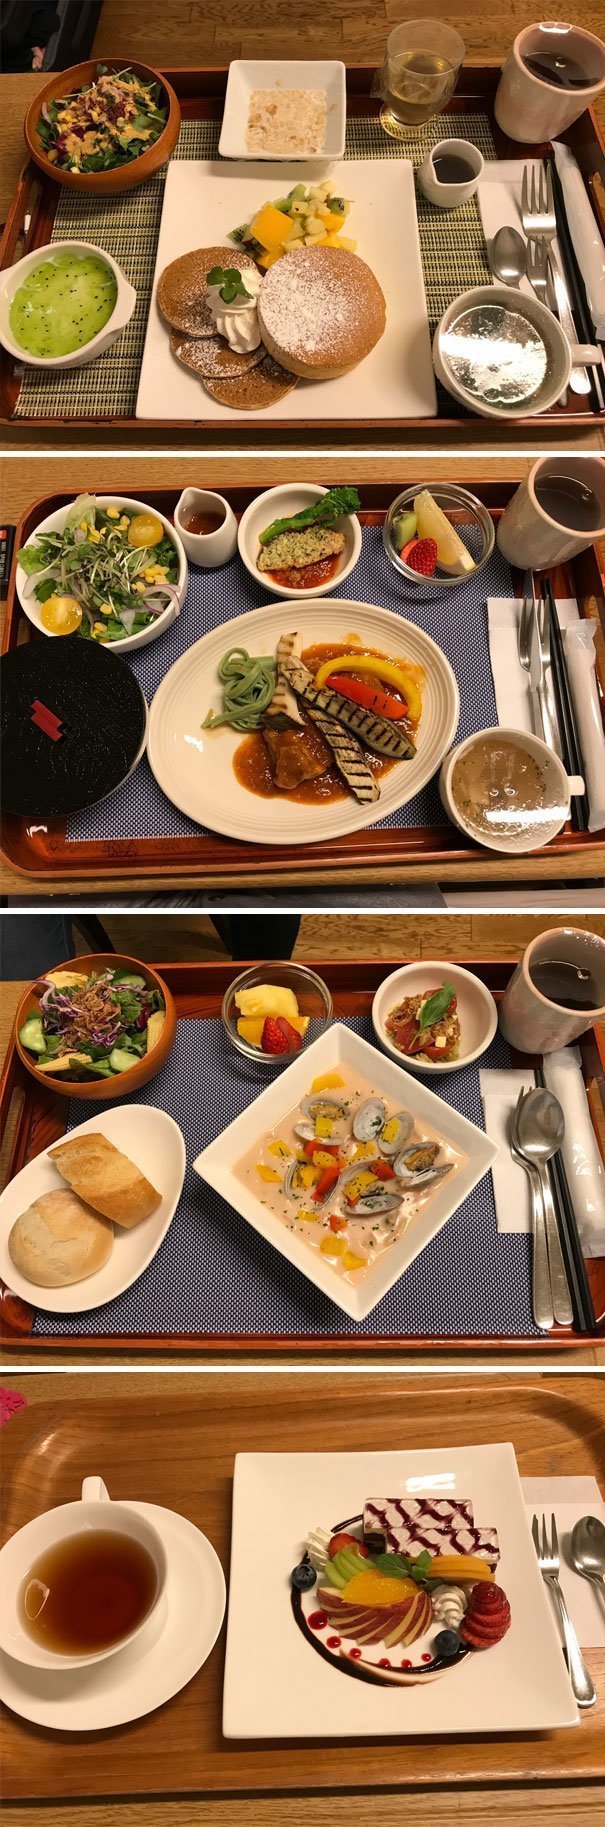 5. Так выглядят обеды в больницах Японии